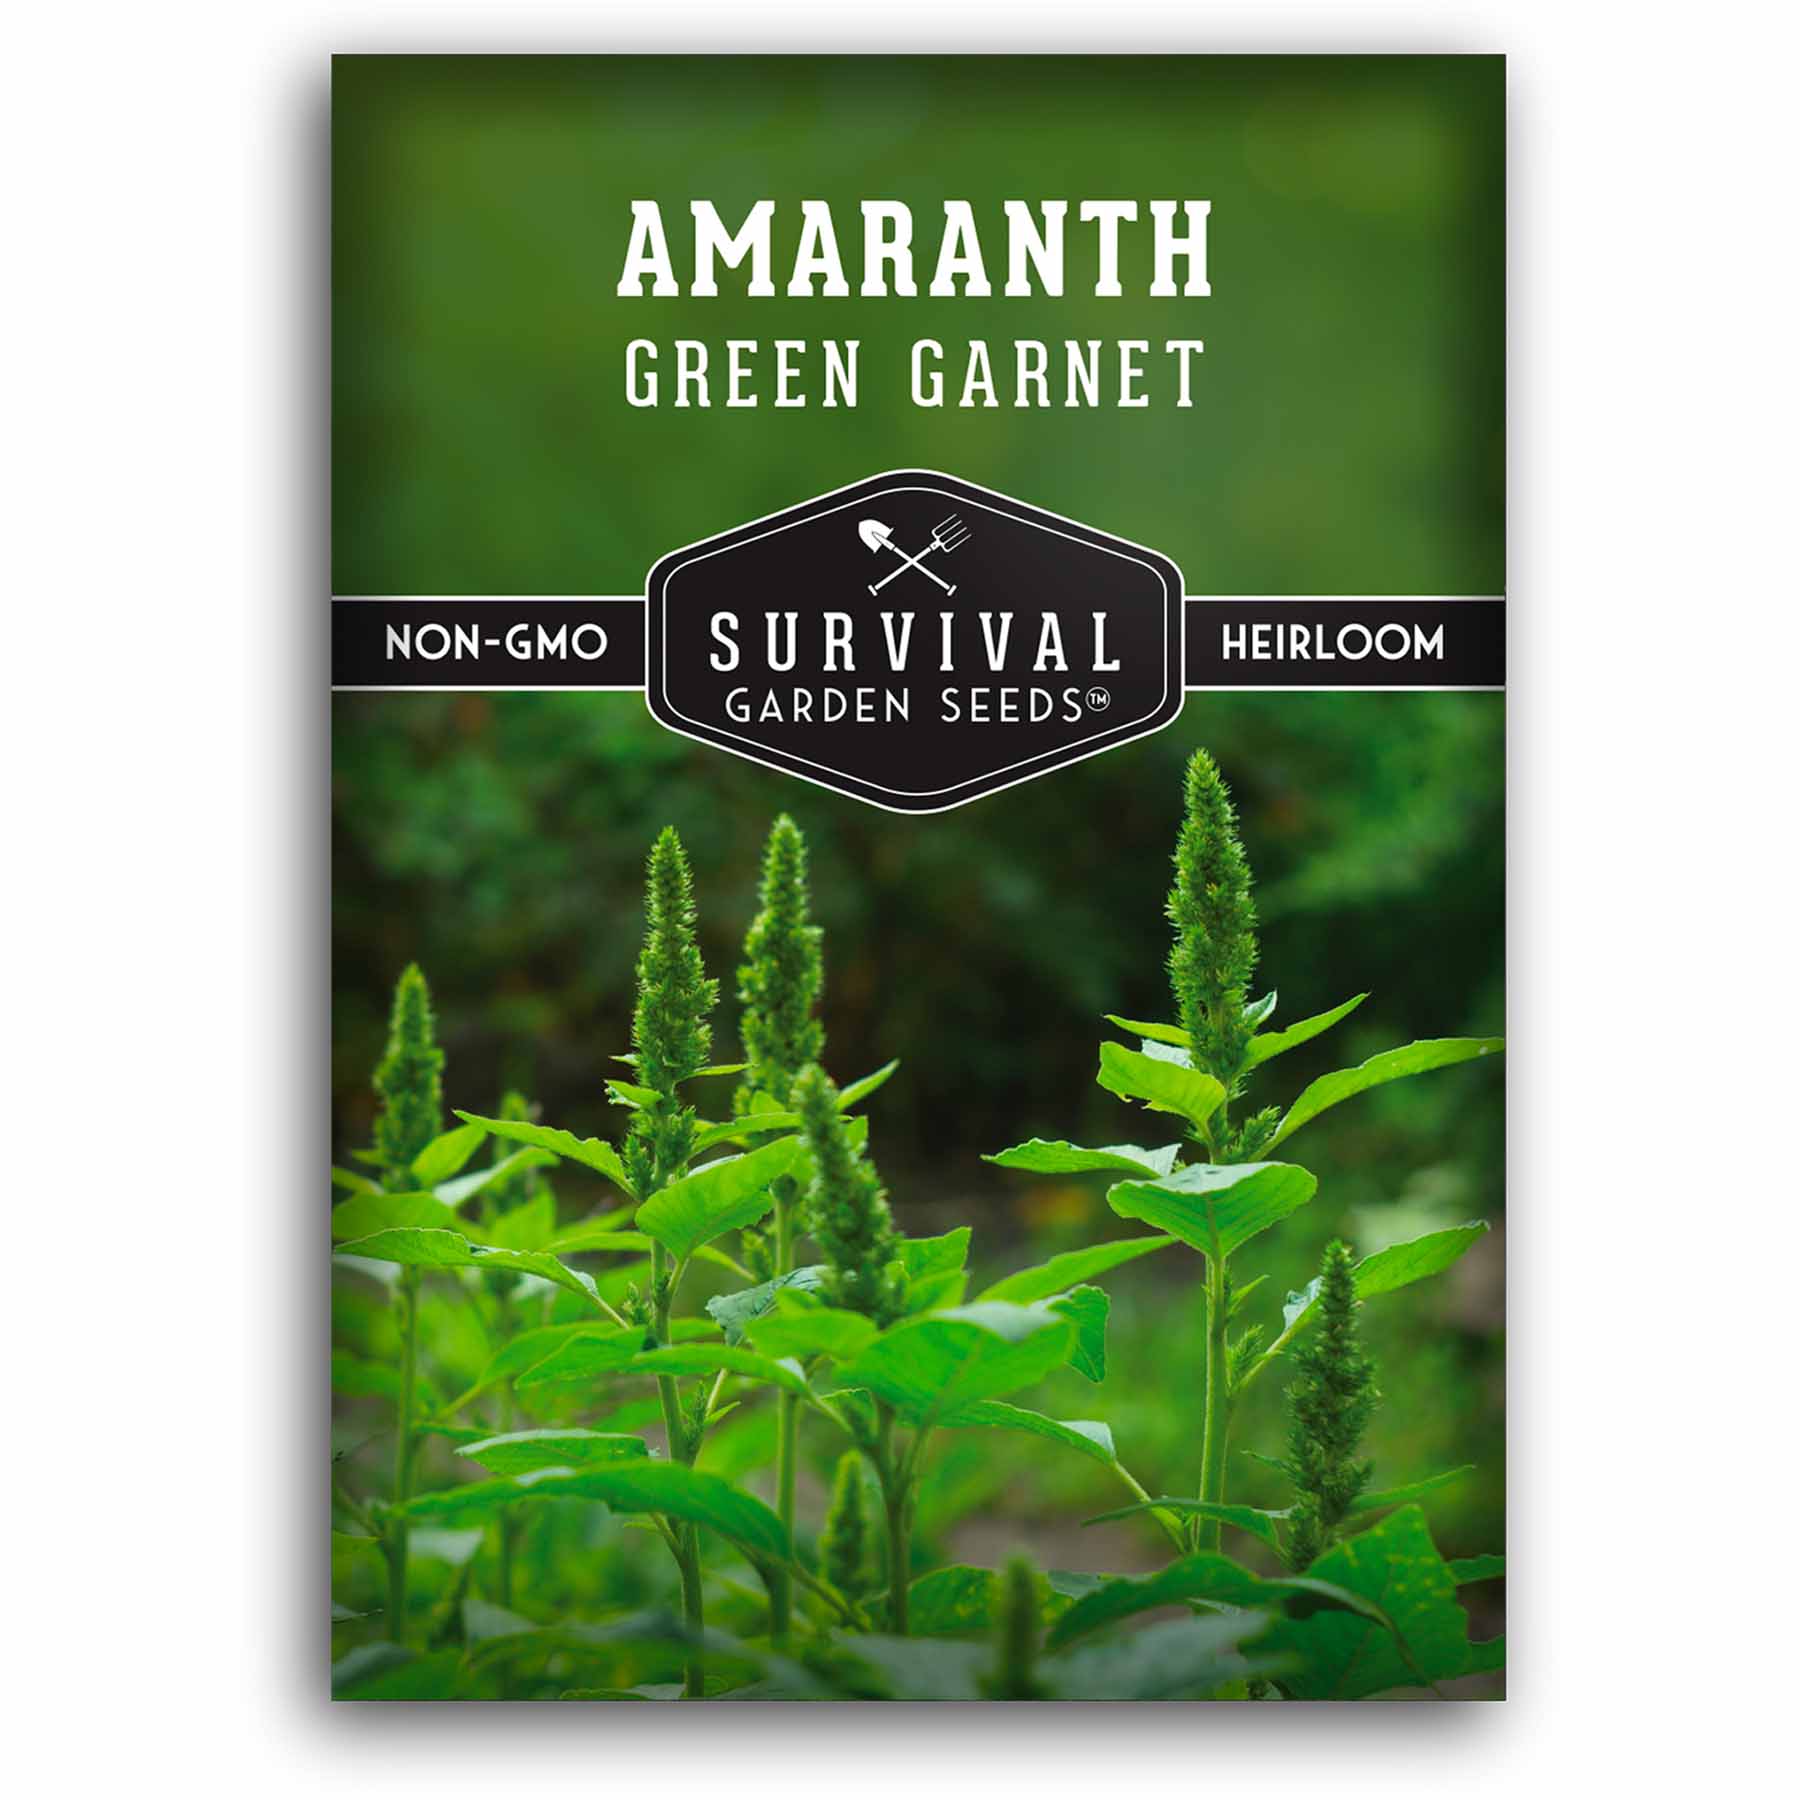 Green Garnet Amaranth Grain Seeds